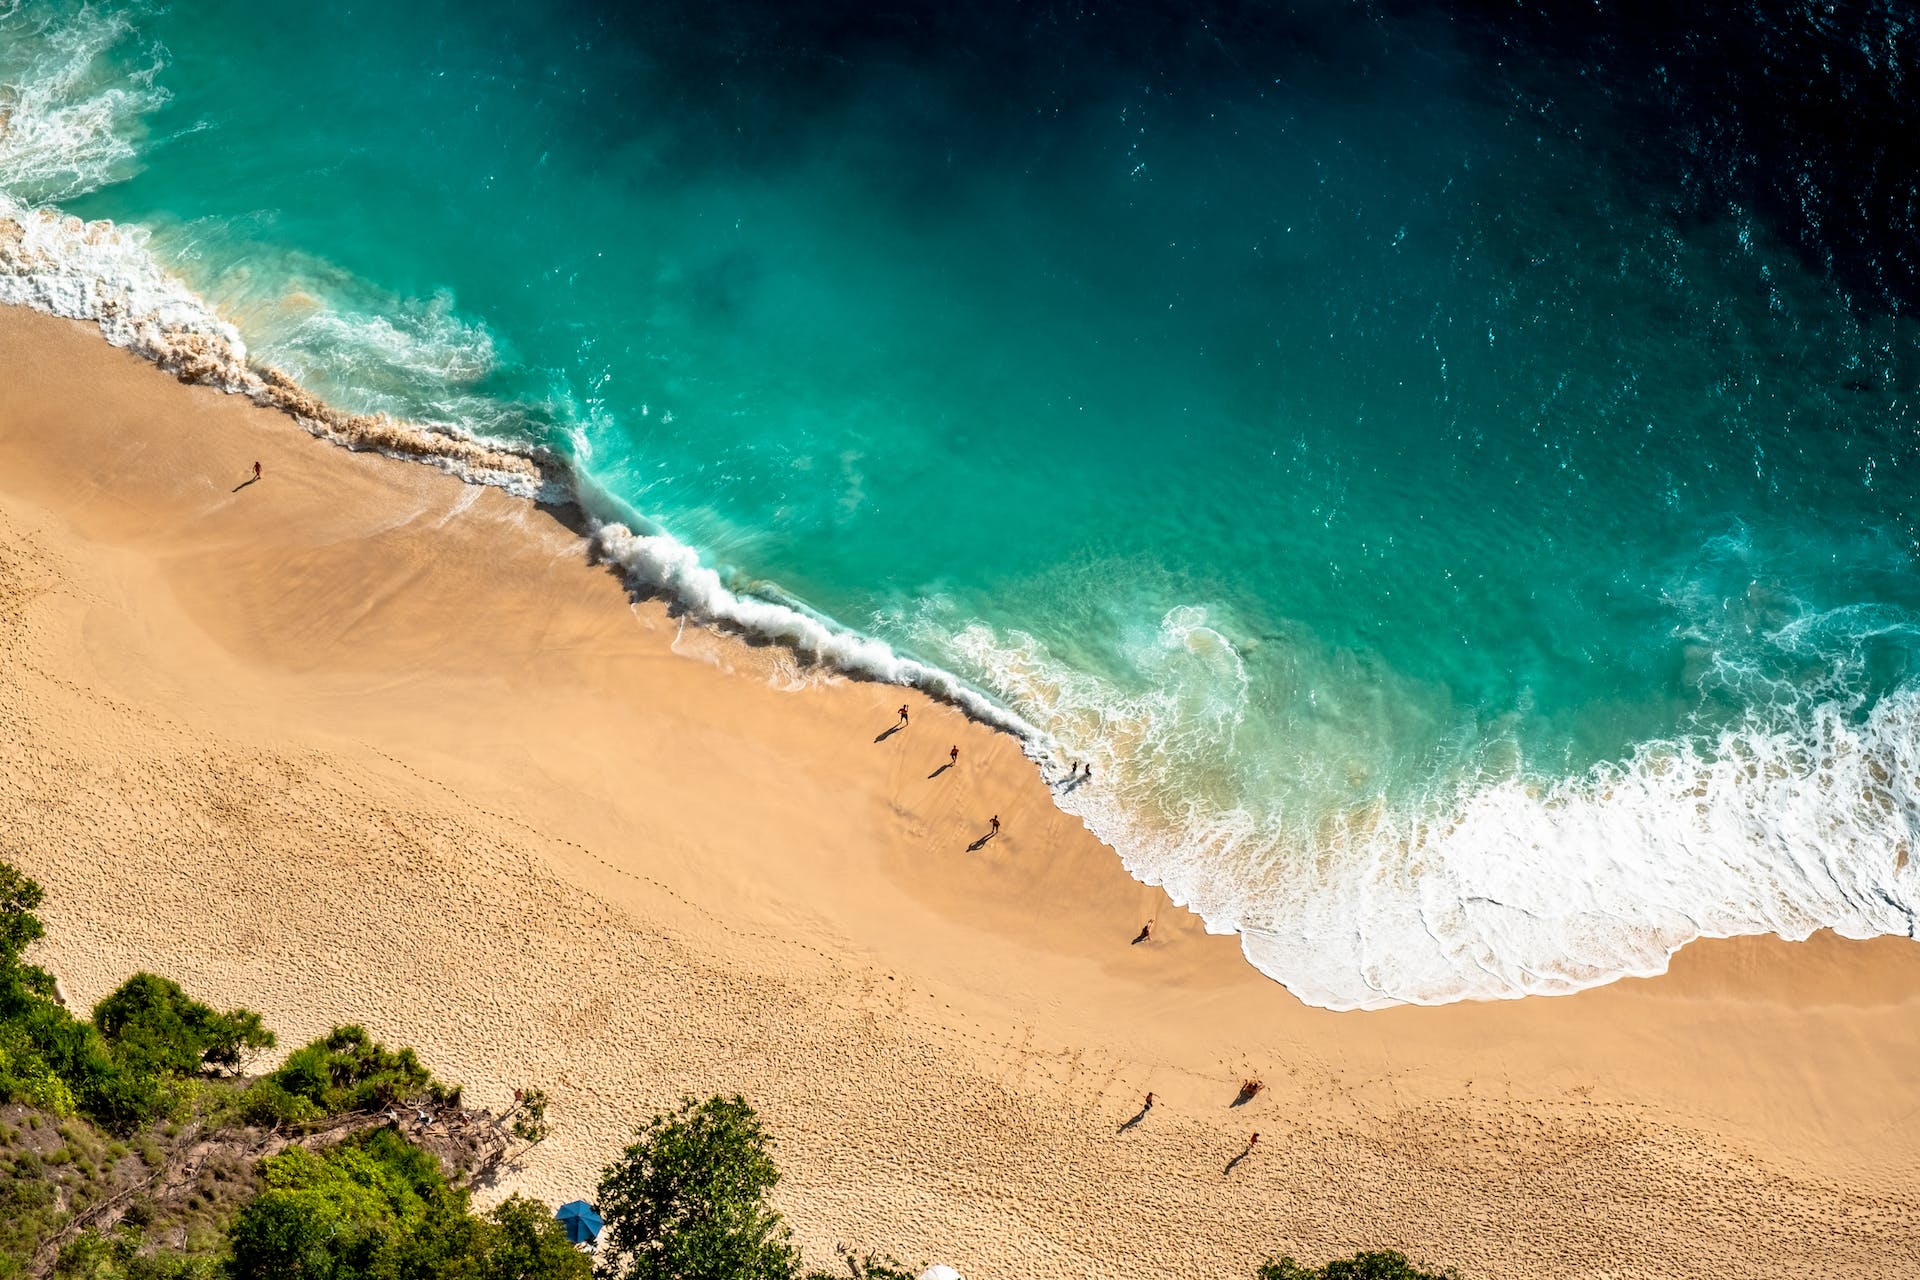 Image de plage prise par un drone | Source : Pexels